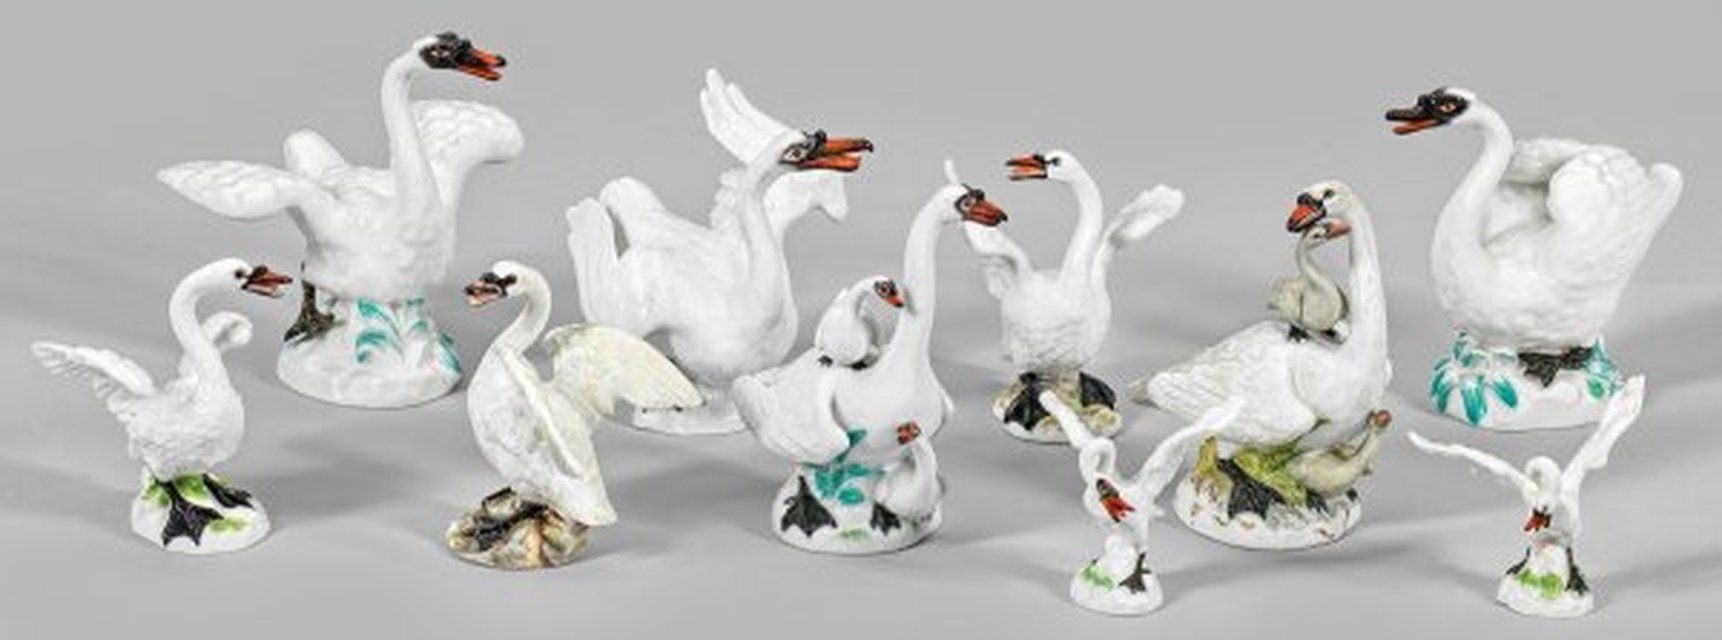 Коллекция фигурок лебедей Мейссен: детали и история